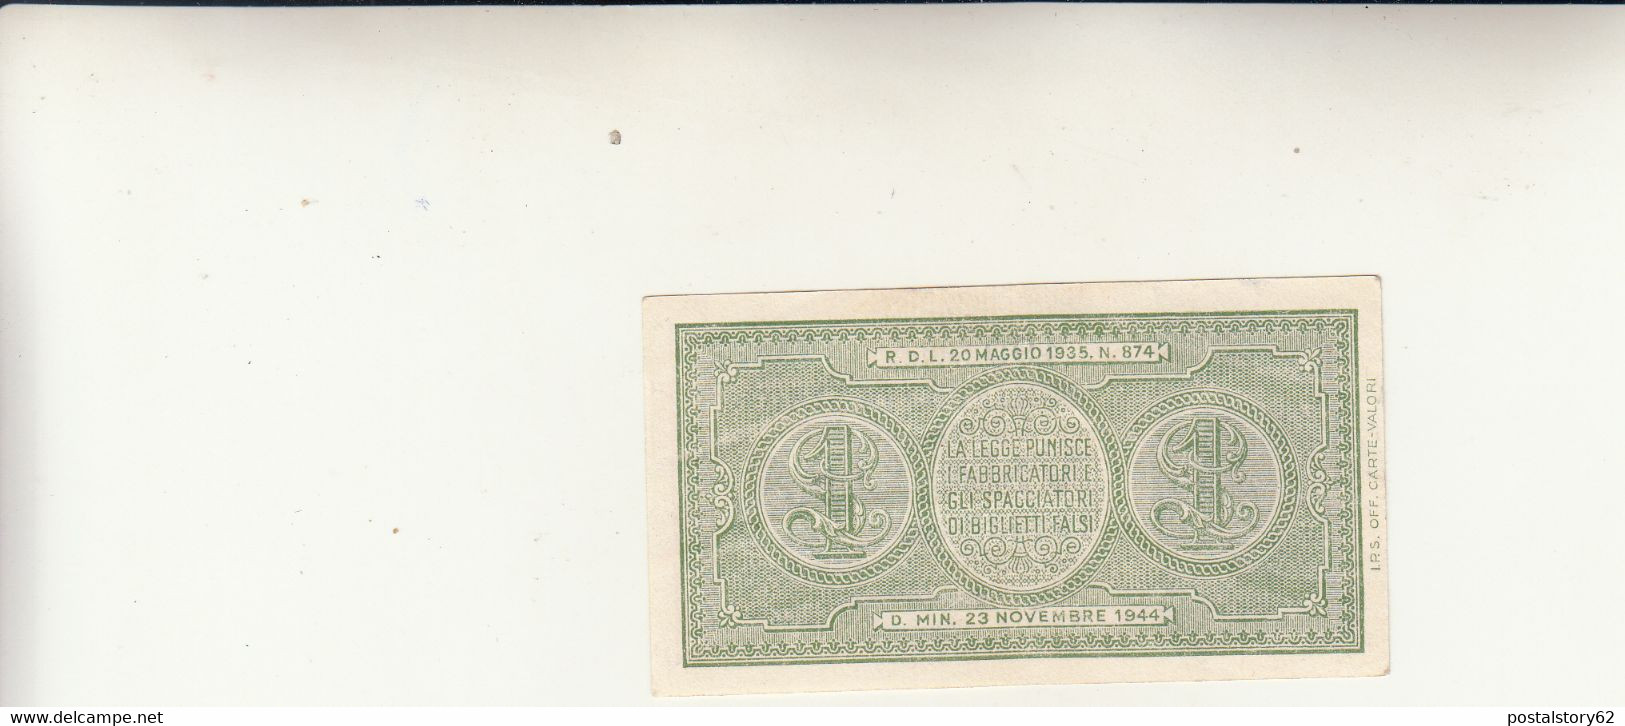 Biglietto Di Stato A Corso Legale, Banconota Da 1 Lira.  DM. 23 Novembre 1944 - Italia – 1 Lira